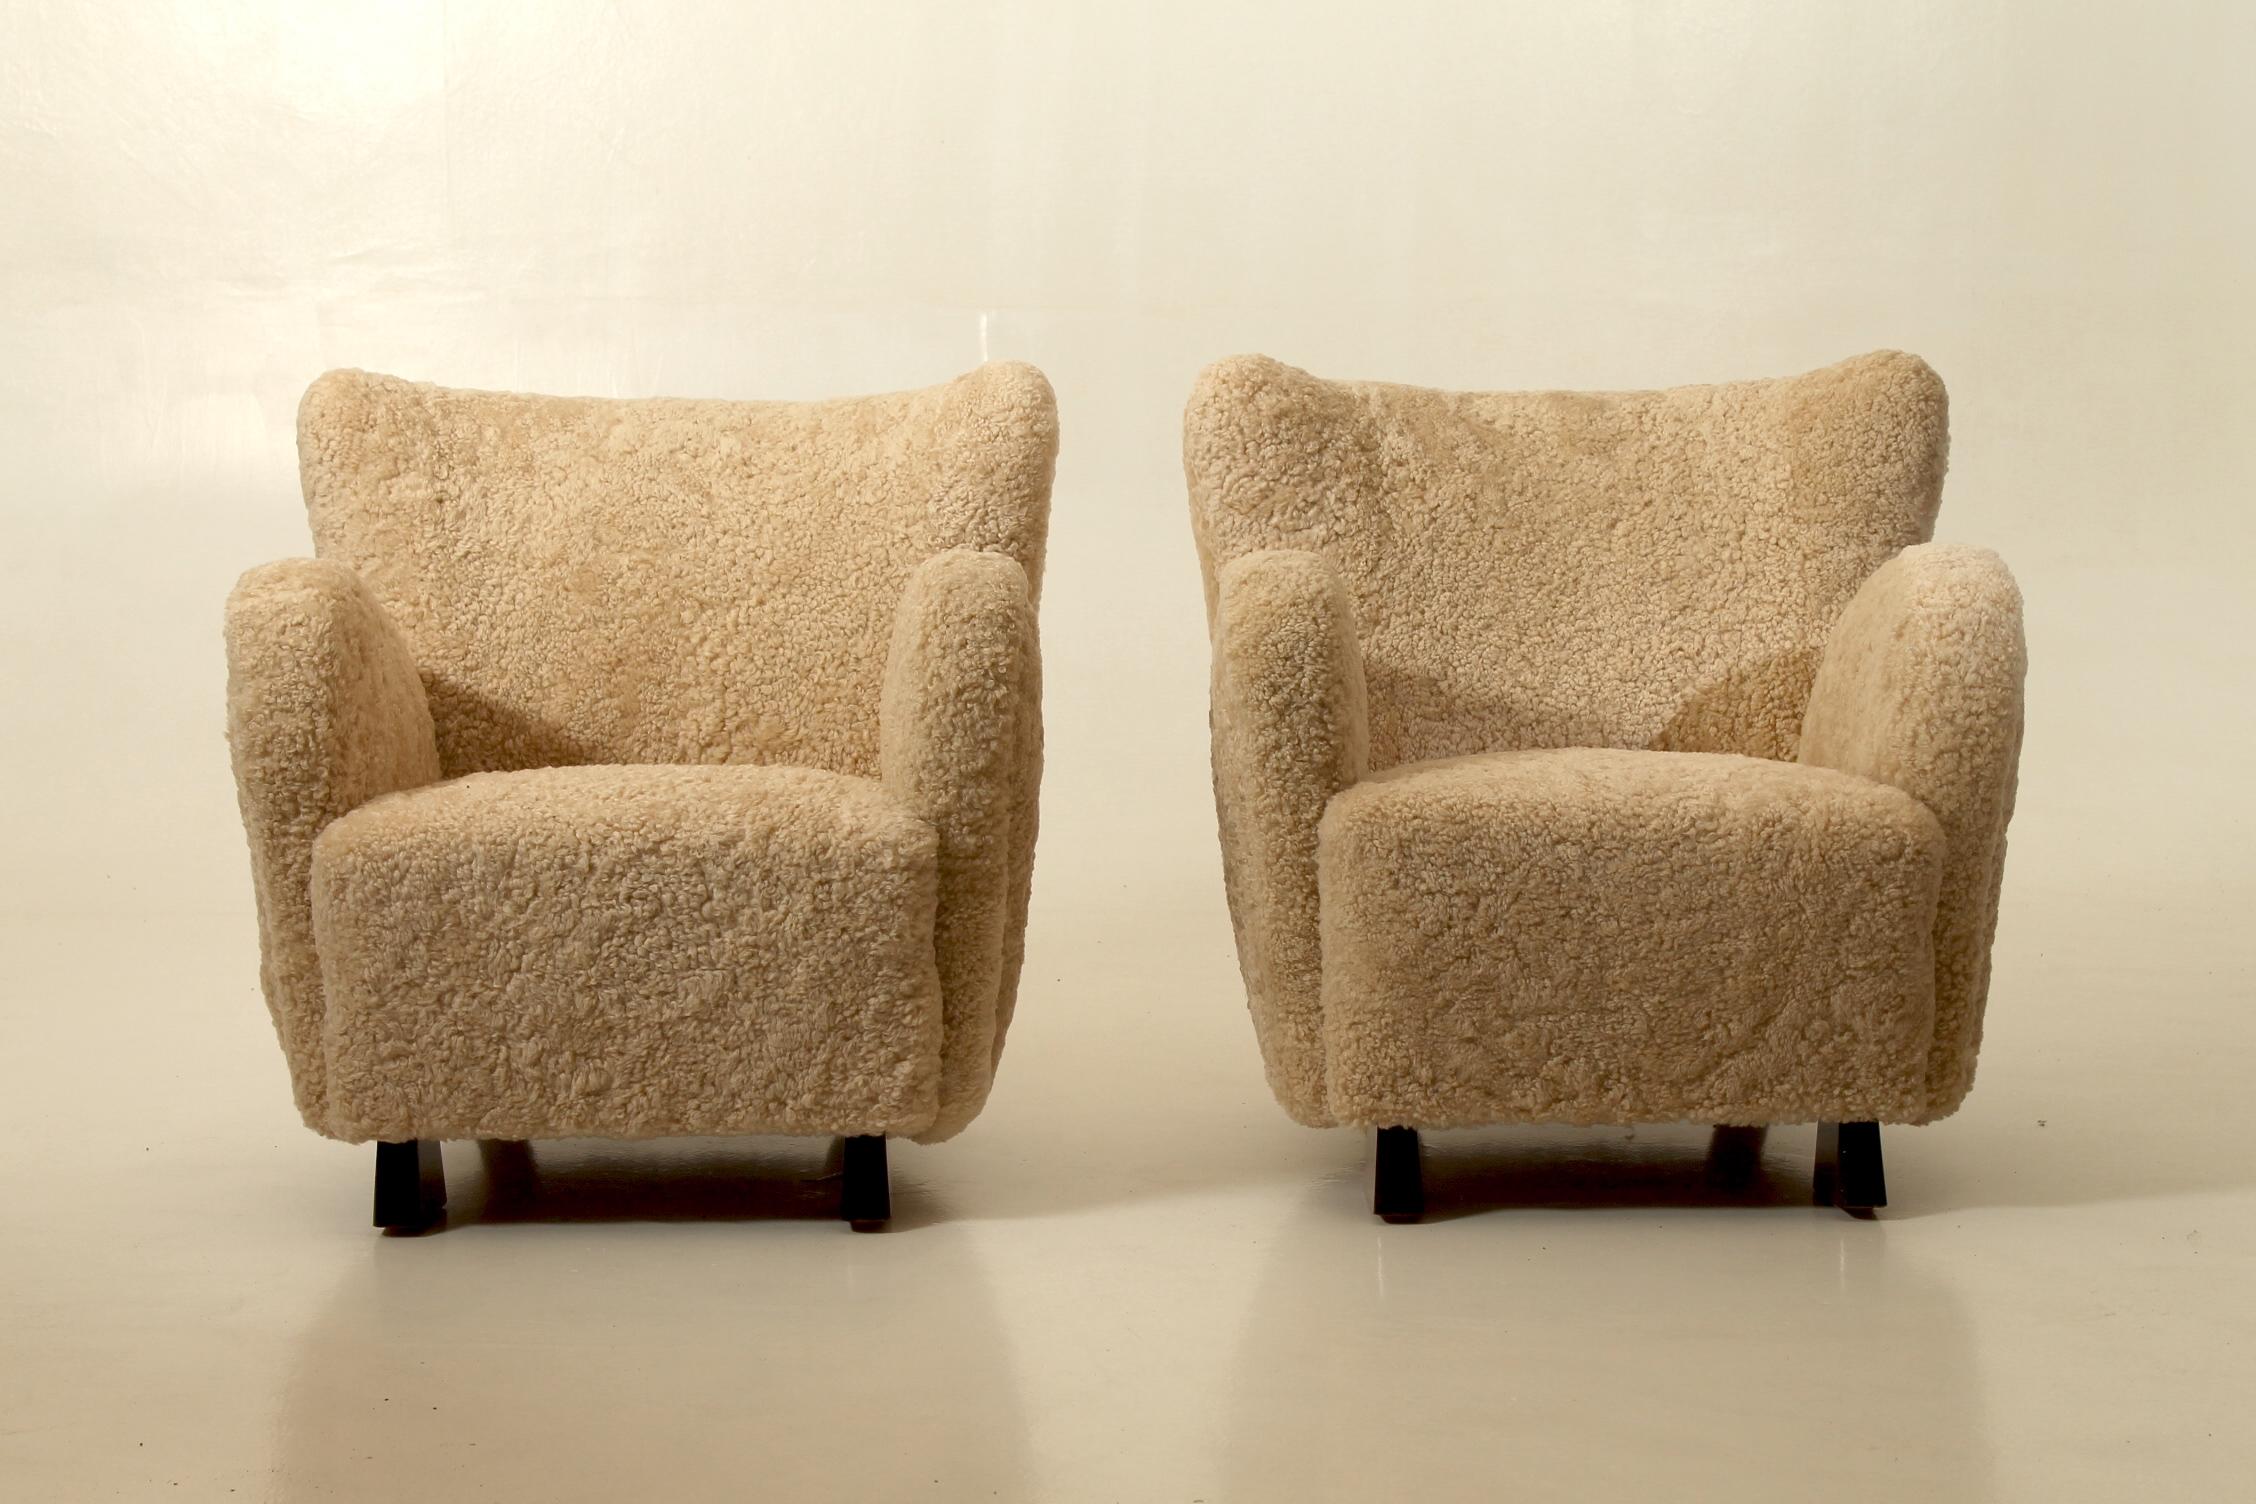 Rare paire de fauteuils conçus par Flemming Lassen. Produit par l'ébéniste A.J. Iversen, Danemark. Rembourrage en peau de mouton. Conçue et fabriquée dans les années 1940, au Danemark.